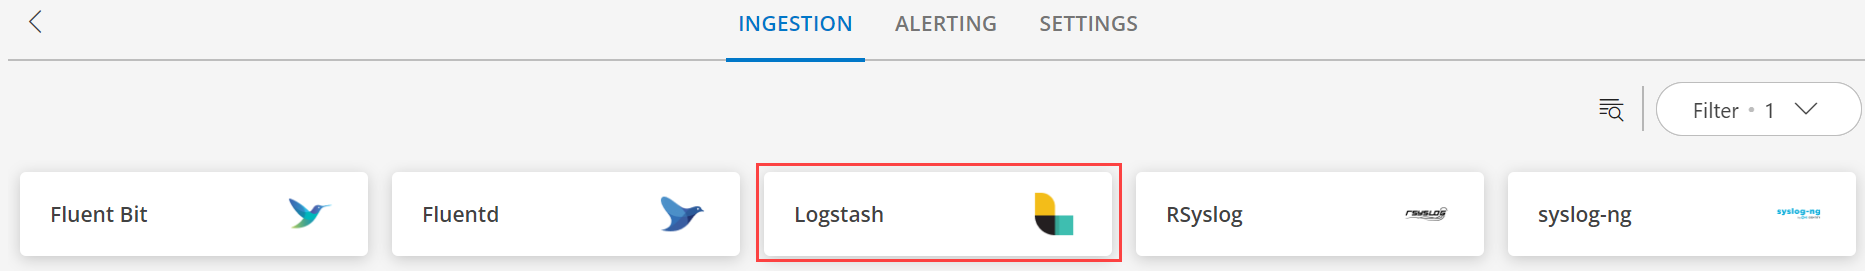 Logstash Support